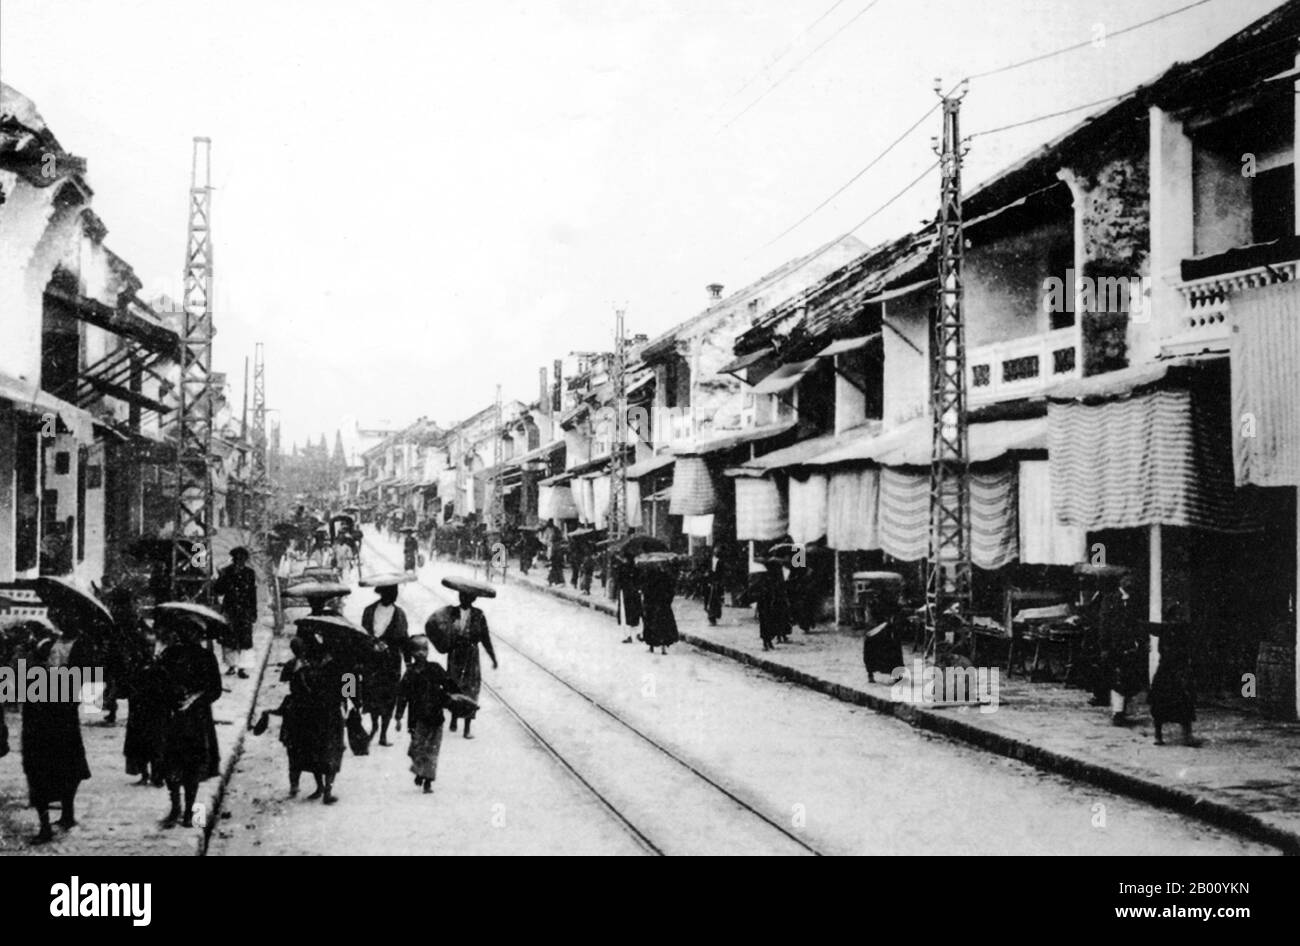 Vietnam: Hang Duong oder Sugar Street, Altstadt, Hanoi (Anfang 20th Jahrhundert). Die Altstadt, in der Nähe des Hoan Kiem Sees, bestand Anfang des 20th. Jahrhunderts nur aus etwa 36 Straßen. Jede Straße hatte dann Händler und Haushalte, die auf einen bestimmten Handel spezialisiert waren, wie Seidenhändler, Schmuck, Silberschmiede, etc. Die meisten Straßennamen in Hanois Altstadt beginnen "hängen", was "Hop" oder "Händler" bedeutet. Die Namen stehen noch heute und die Gegend ist beliebt für Handel und Waren sowie Nachtleben. Stockfoto